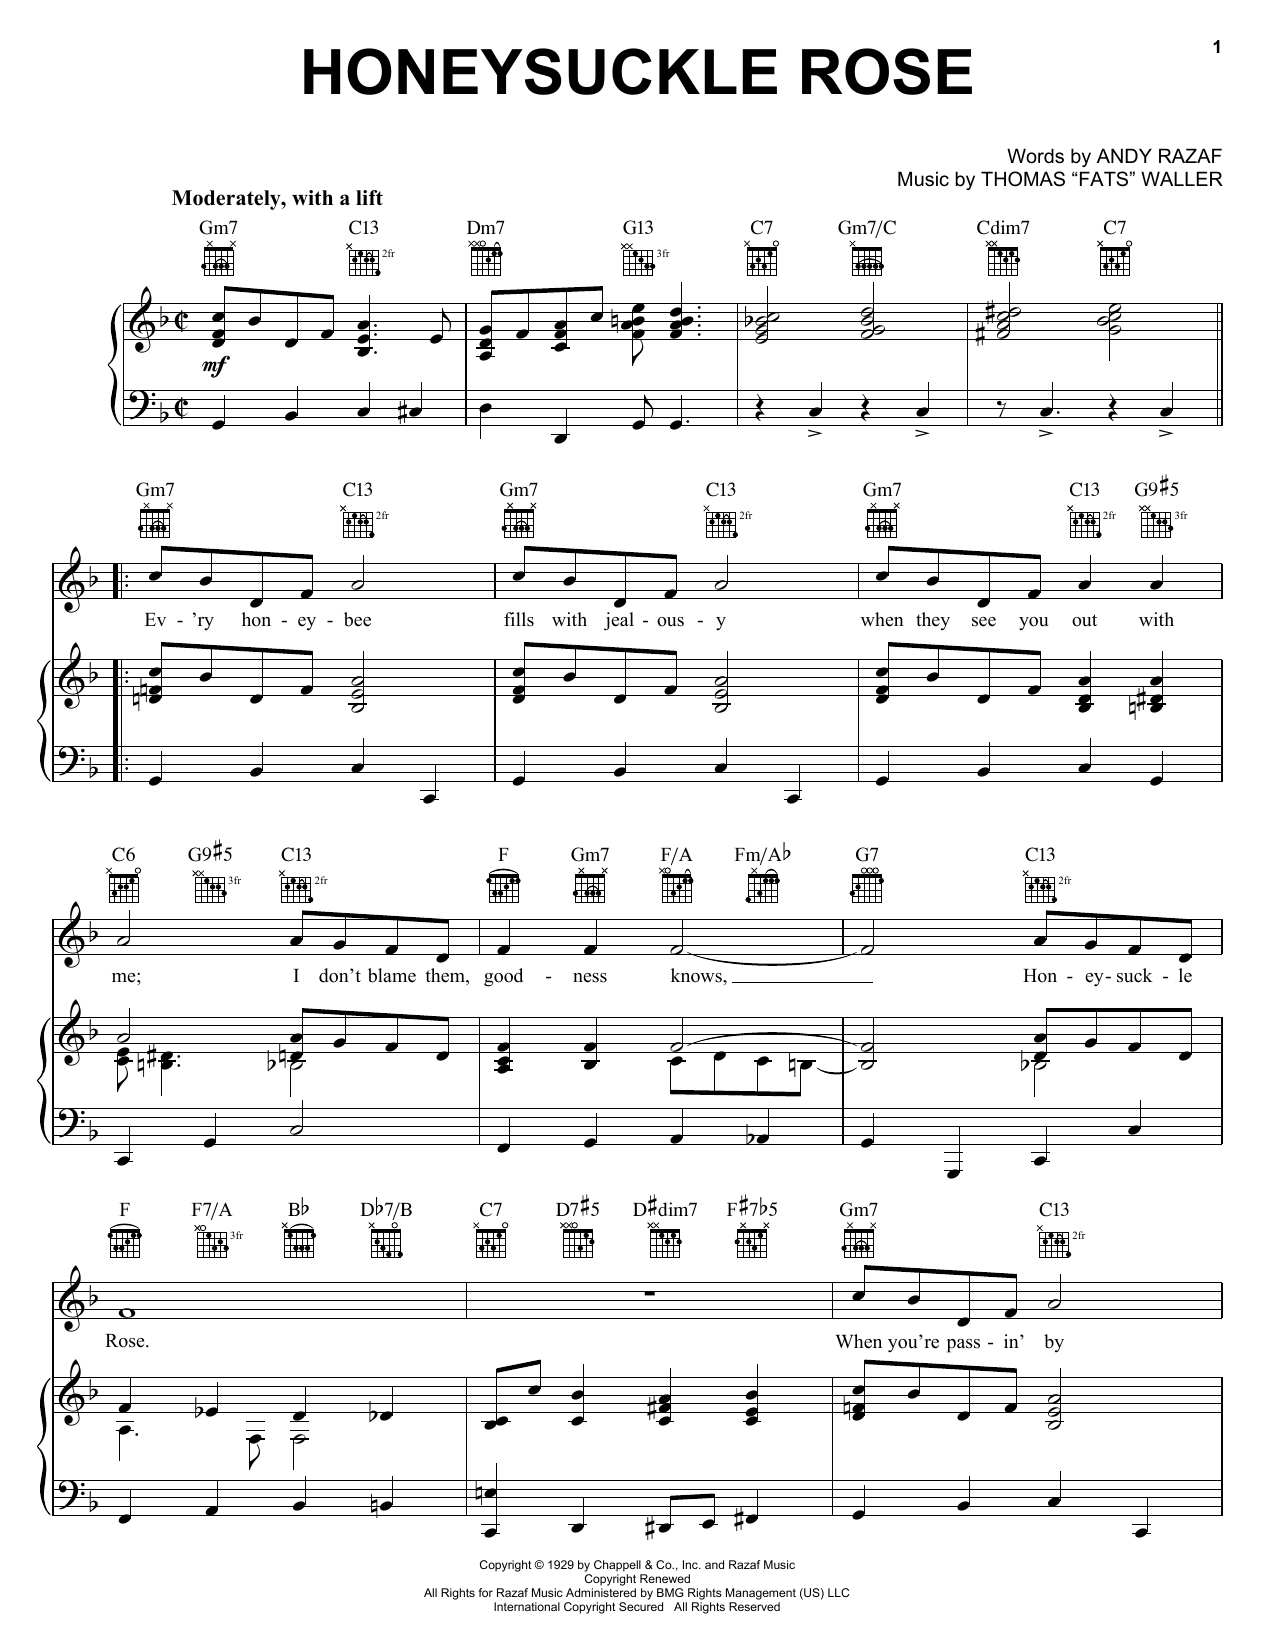 Django Reinhardt Honeysuckle Rose Sheet Music Notes & Chords for Banjo - Download or Print PDF